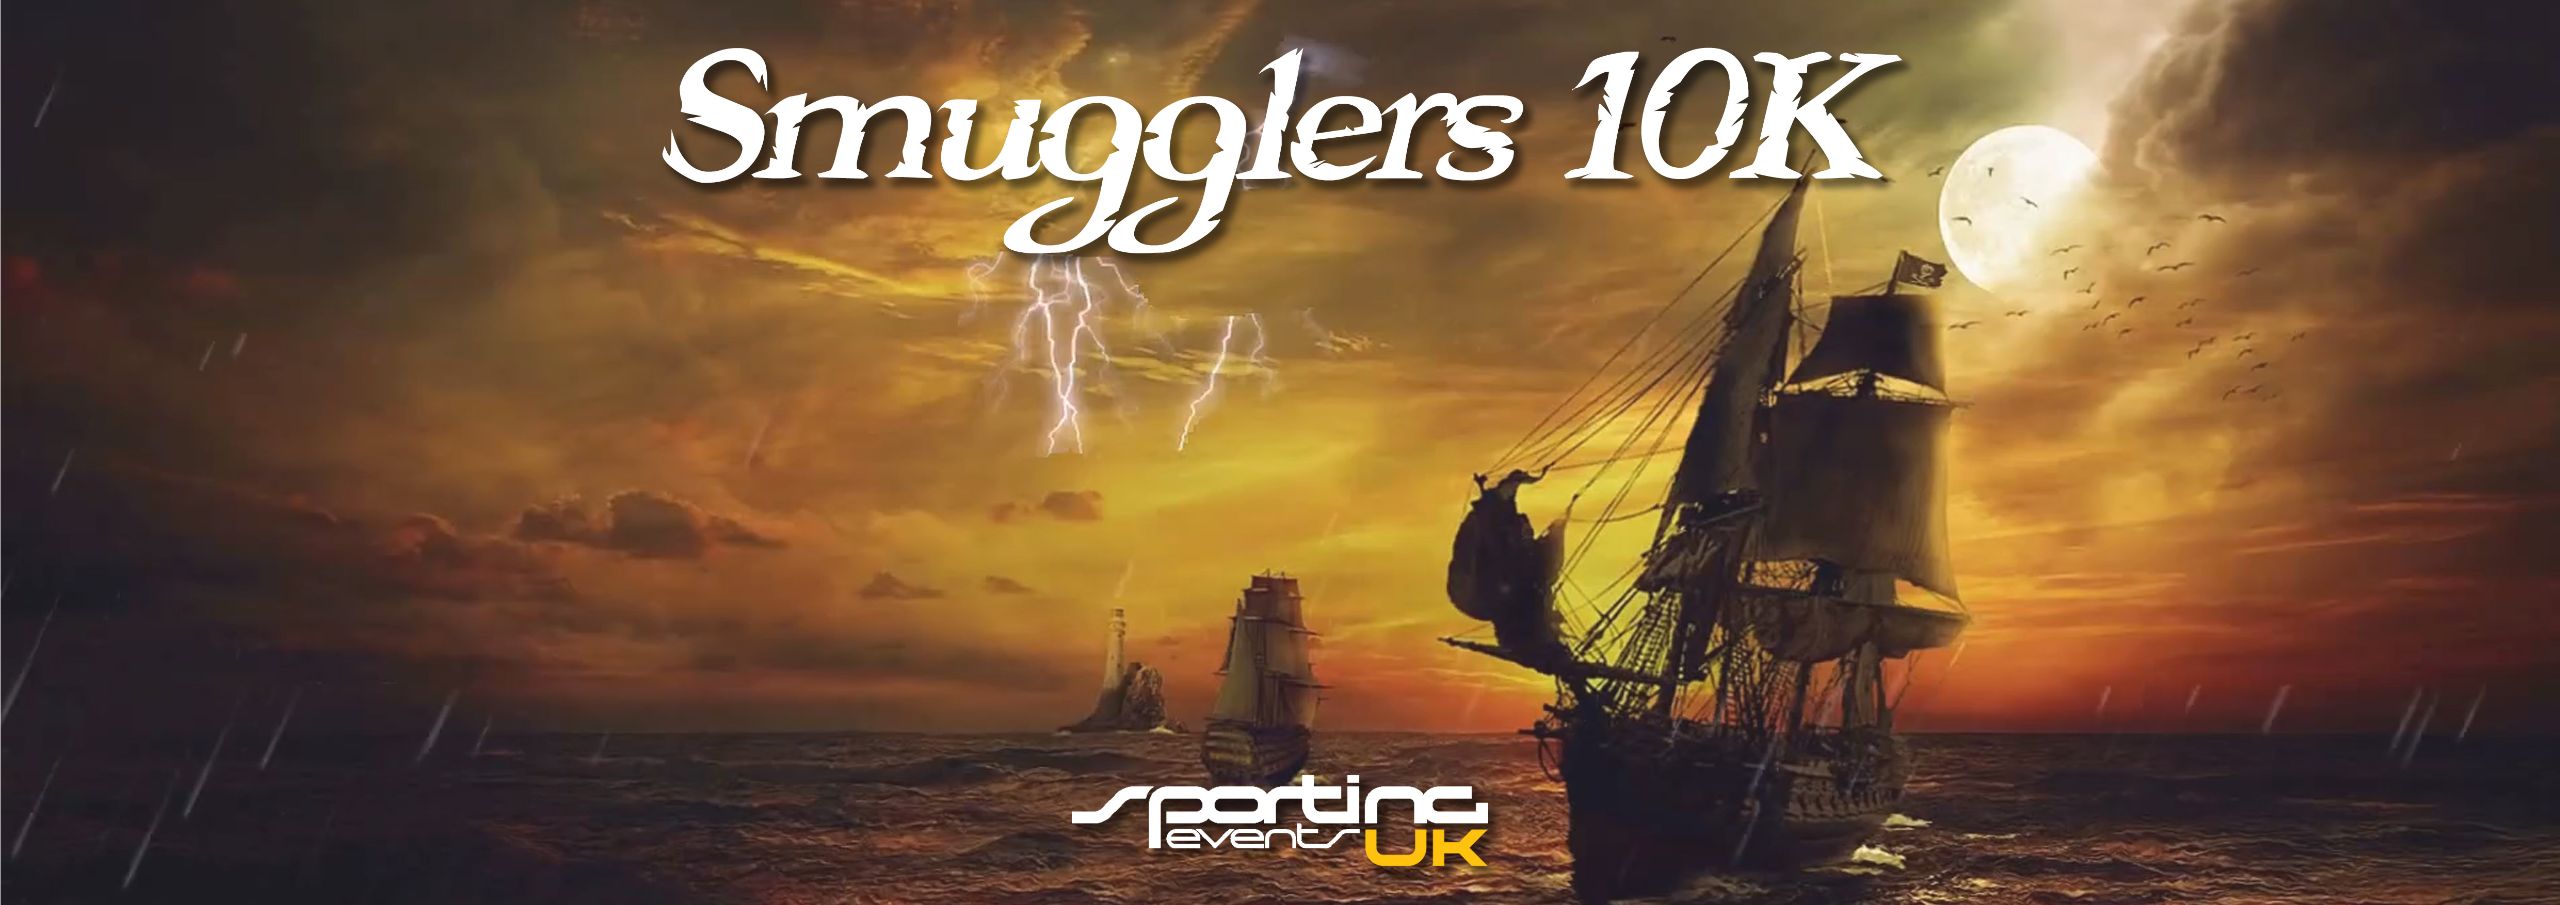 Image for Smugglers 5k